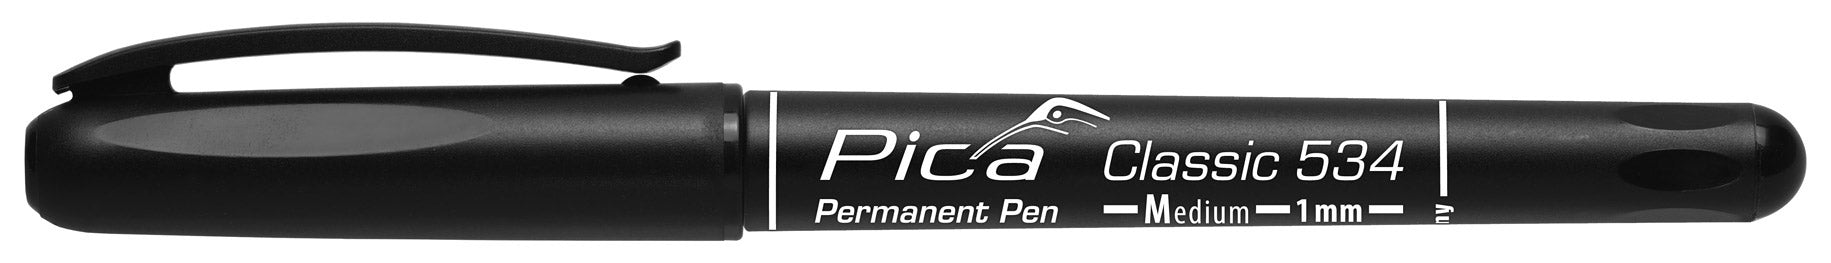 Pica Classic 534 Permanent Pen